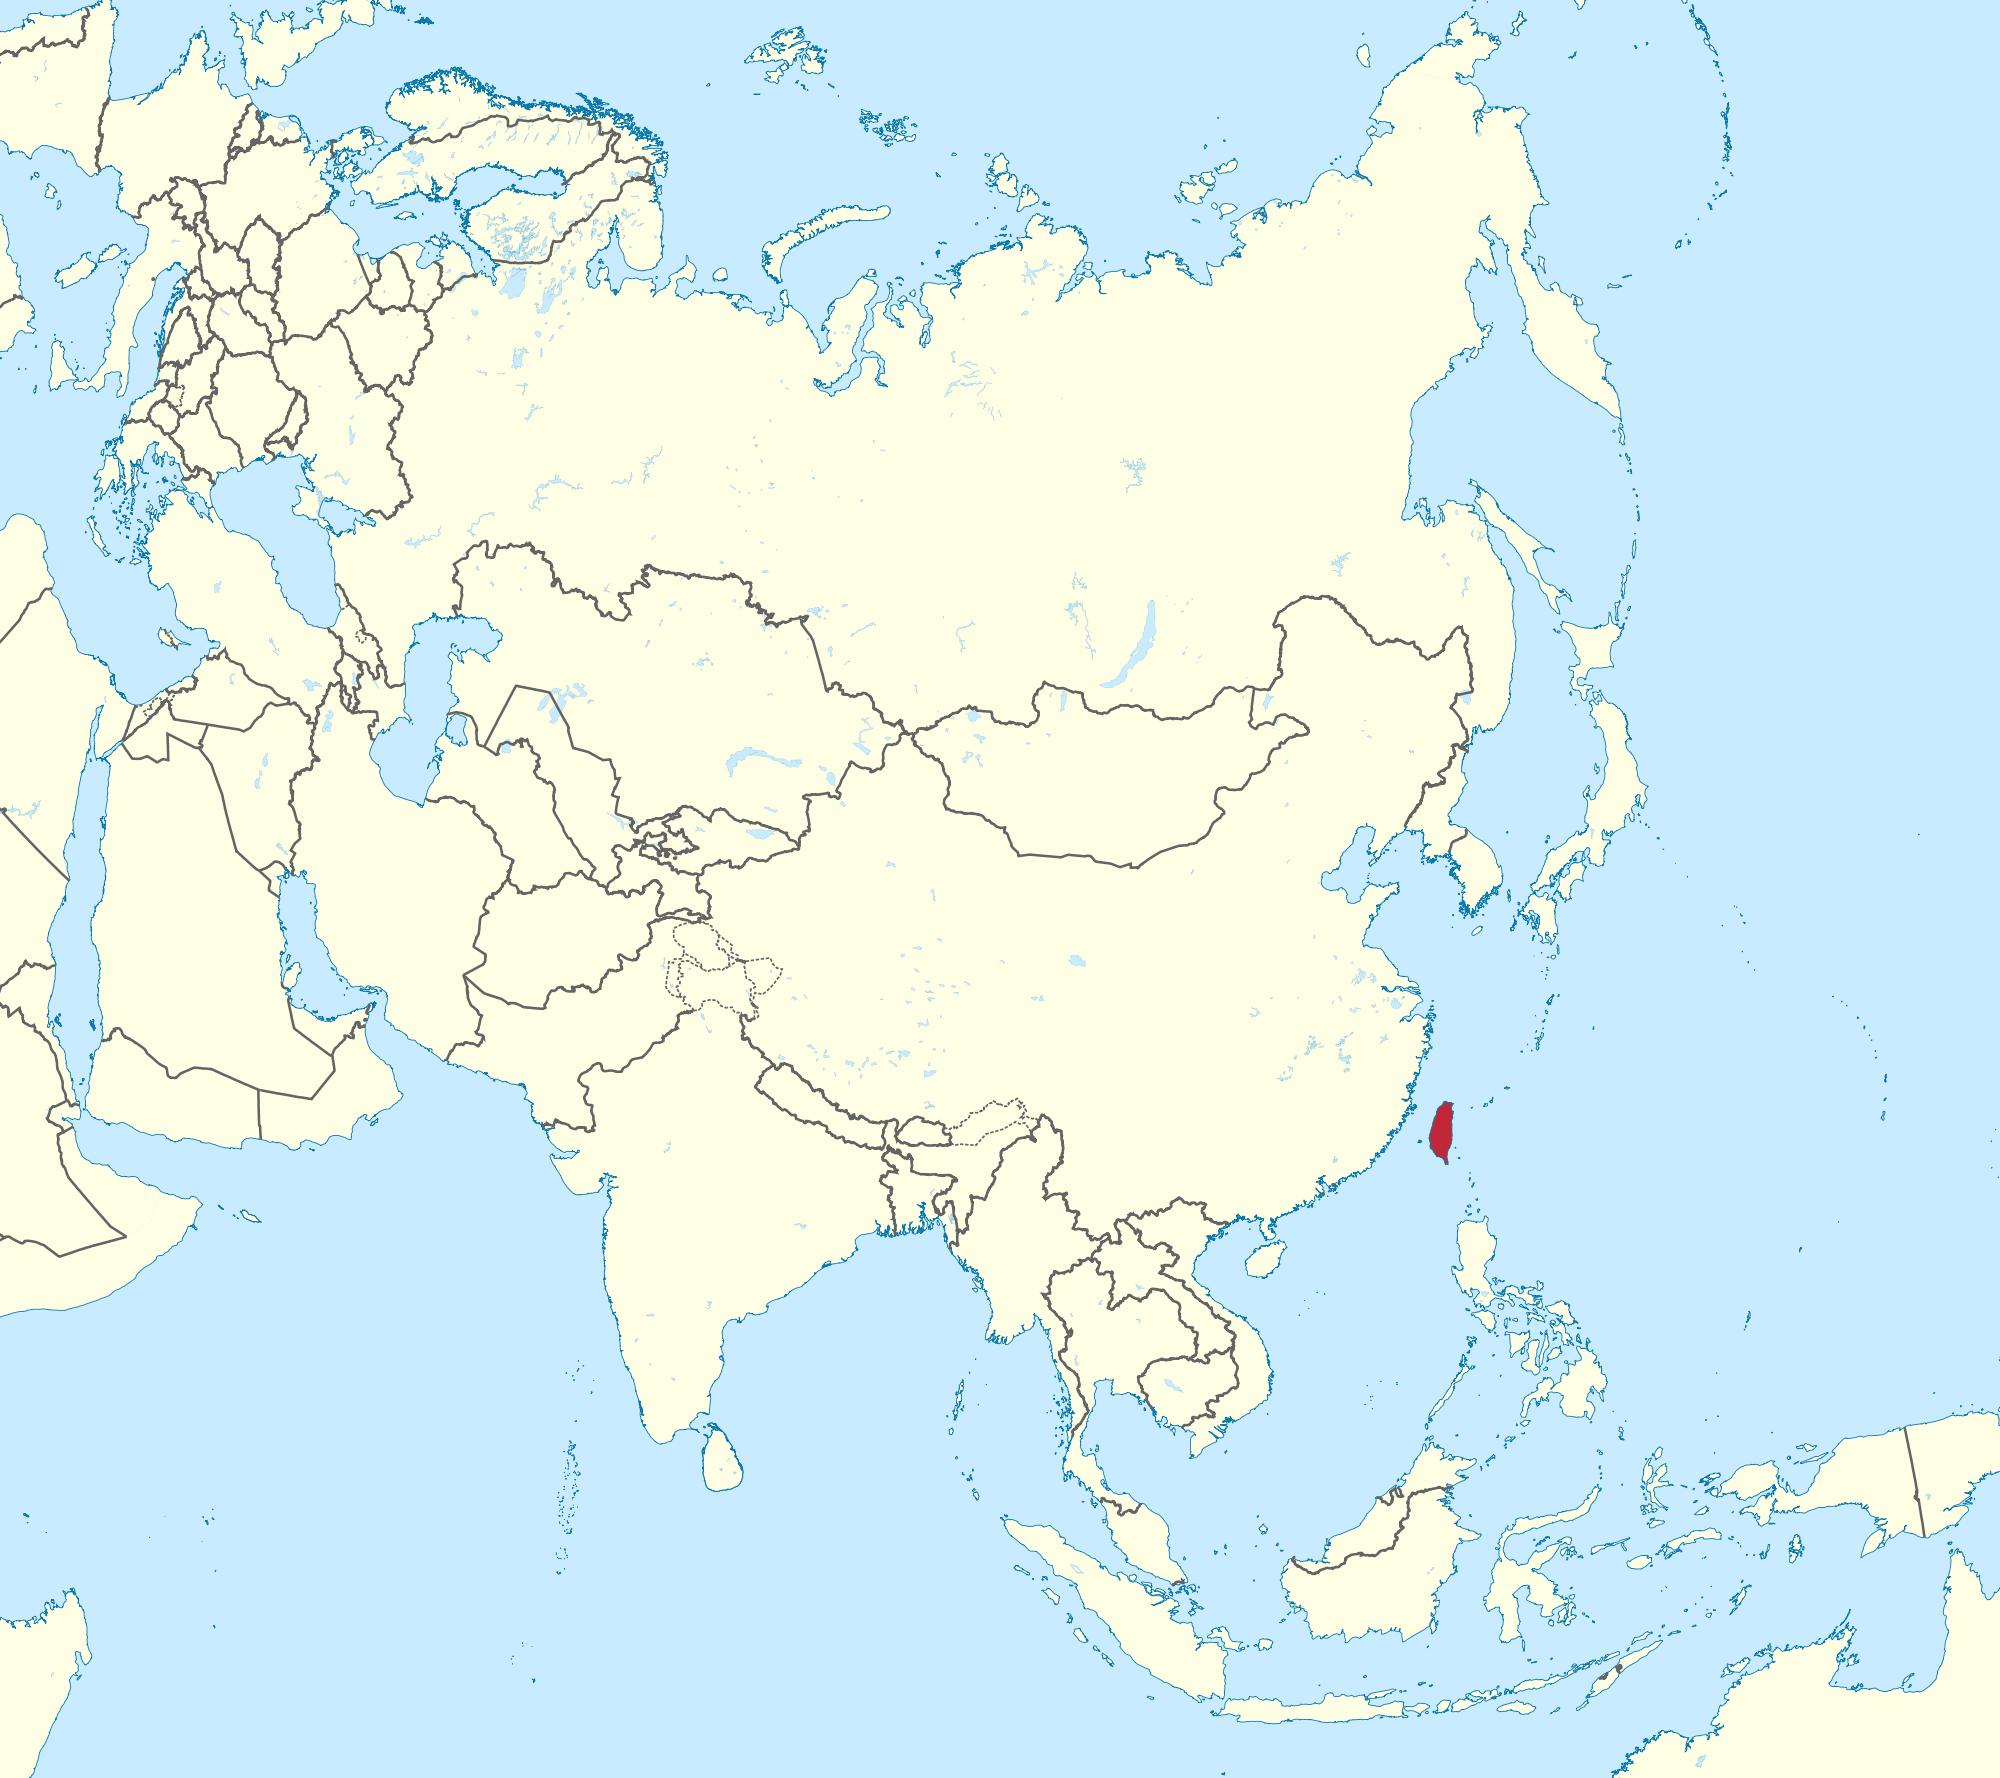 Taiwan kartta-aasia - - Taiwanin kartta aasiassa (Itä-Aasia - Aasia)